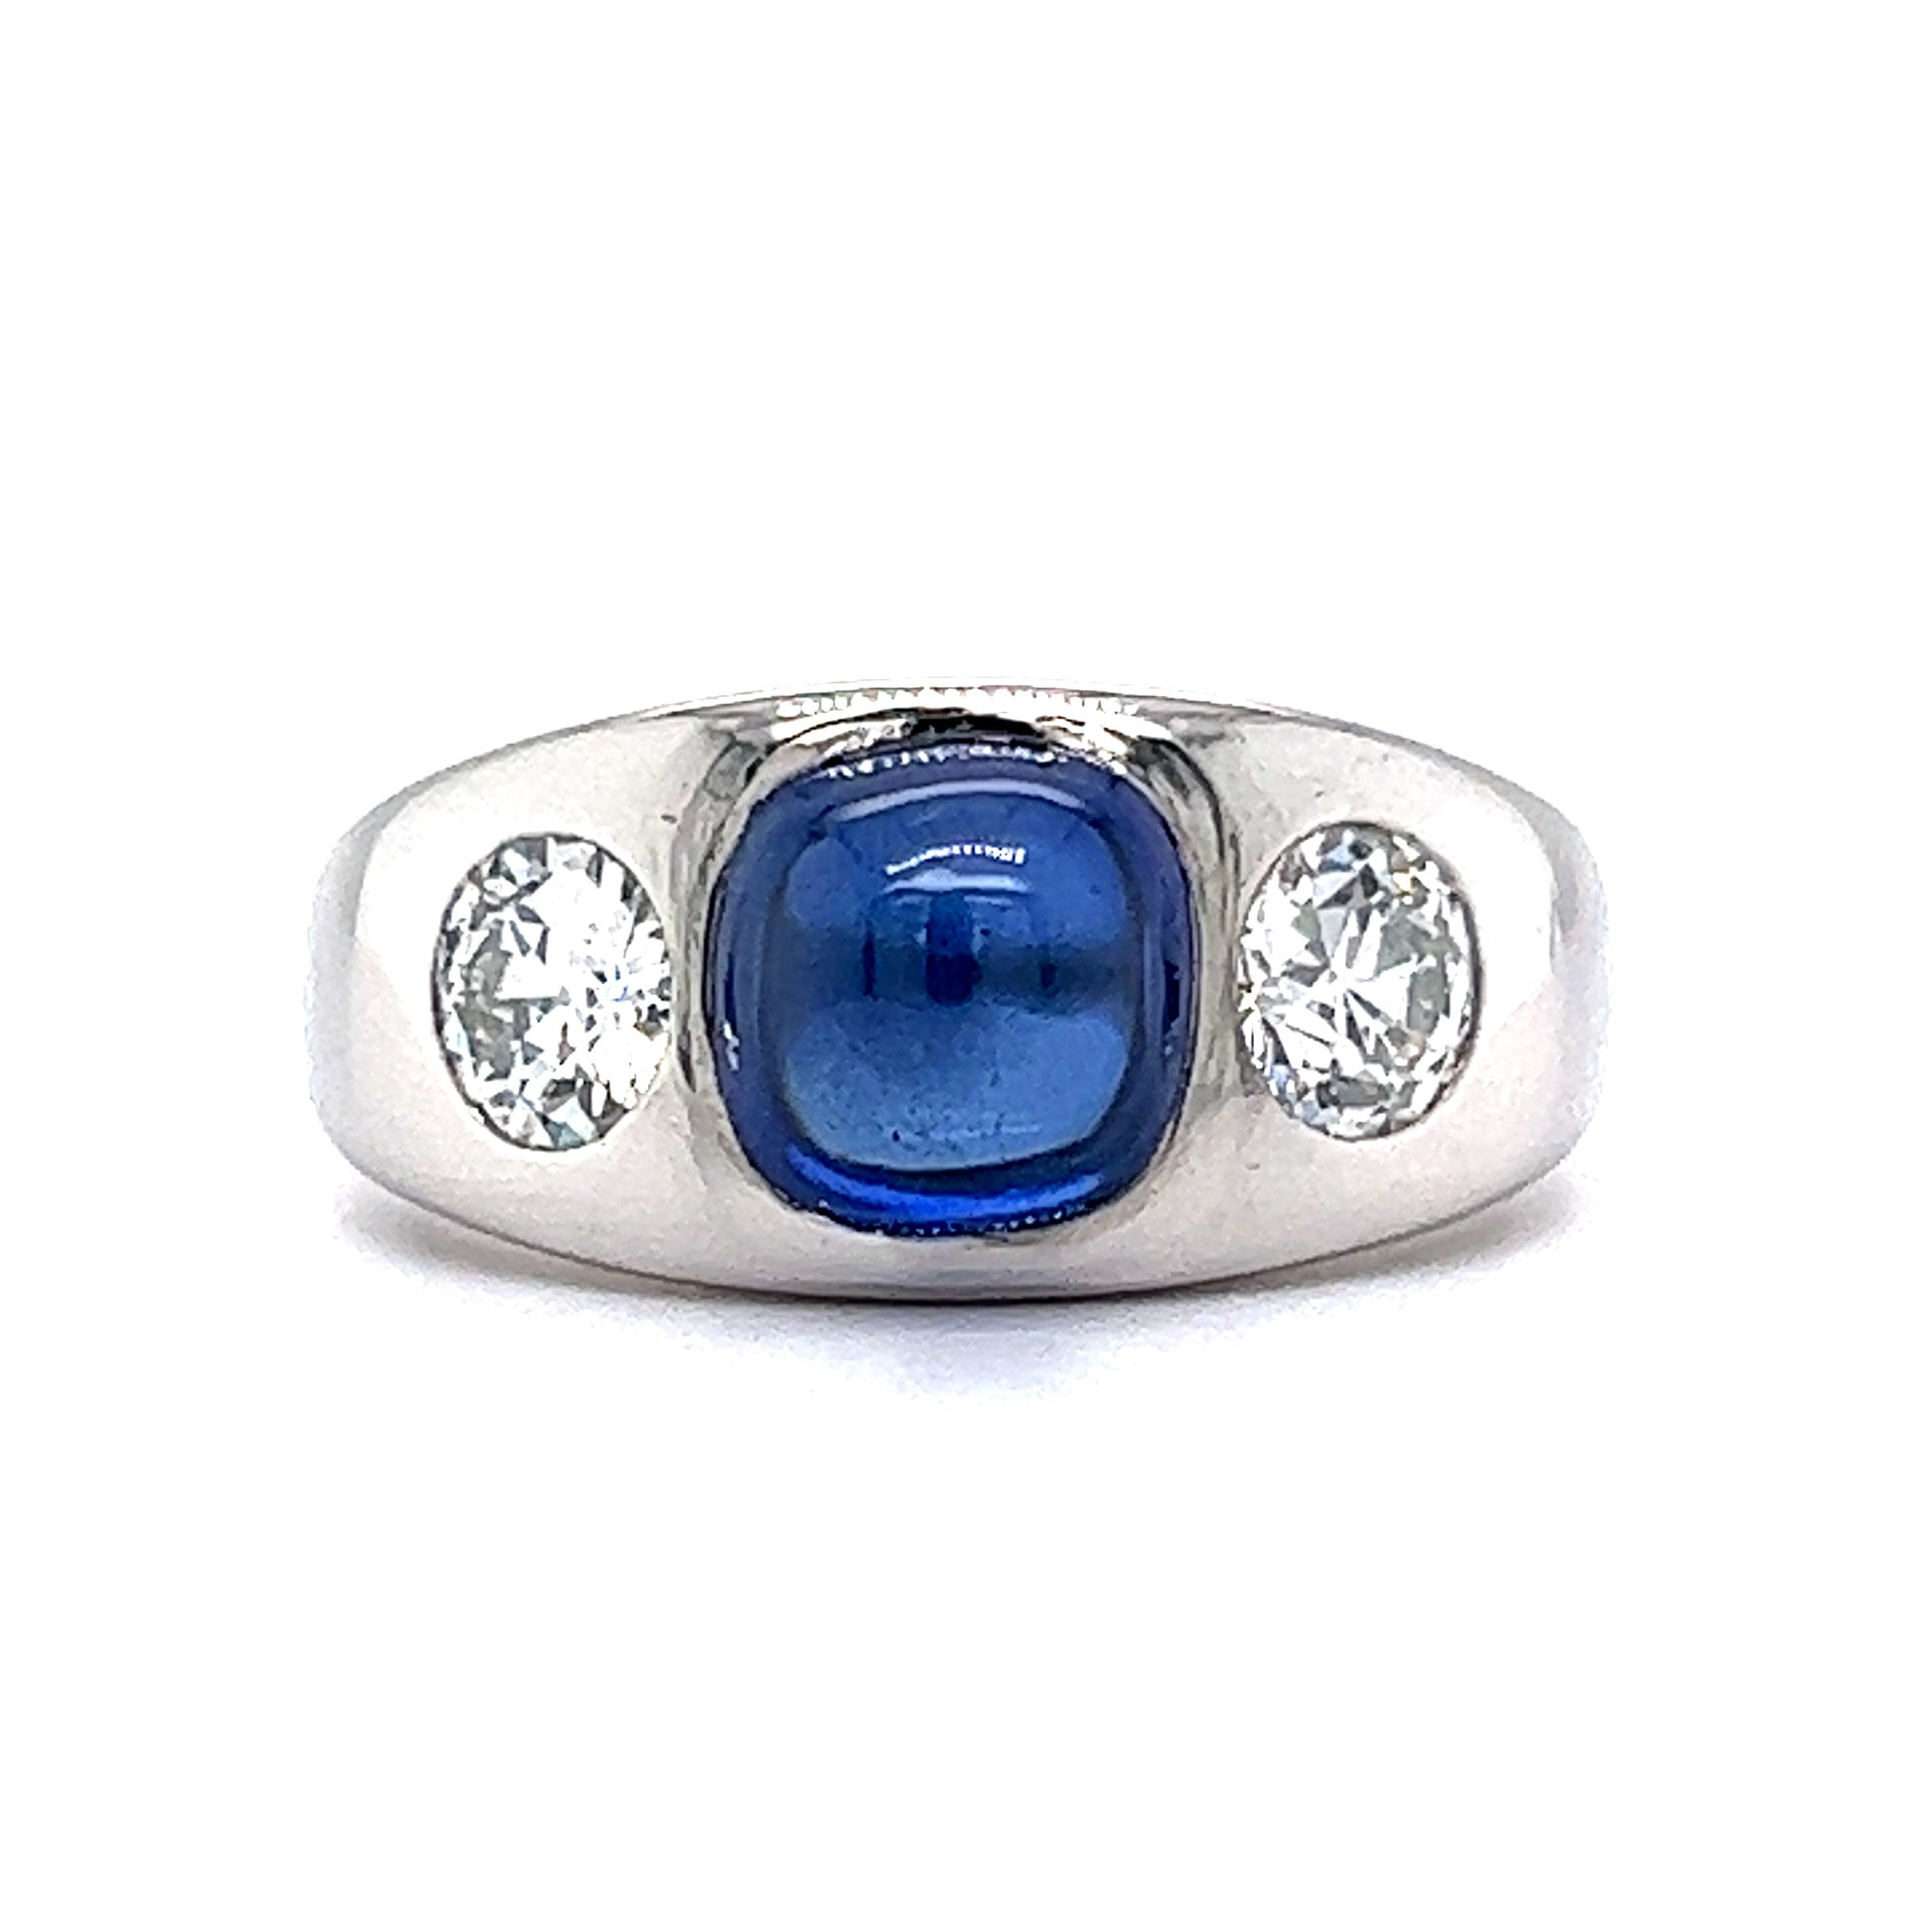 Men's Art Deco Sapphire & Diamond Ring in Platinum